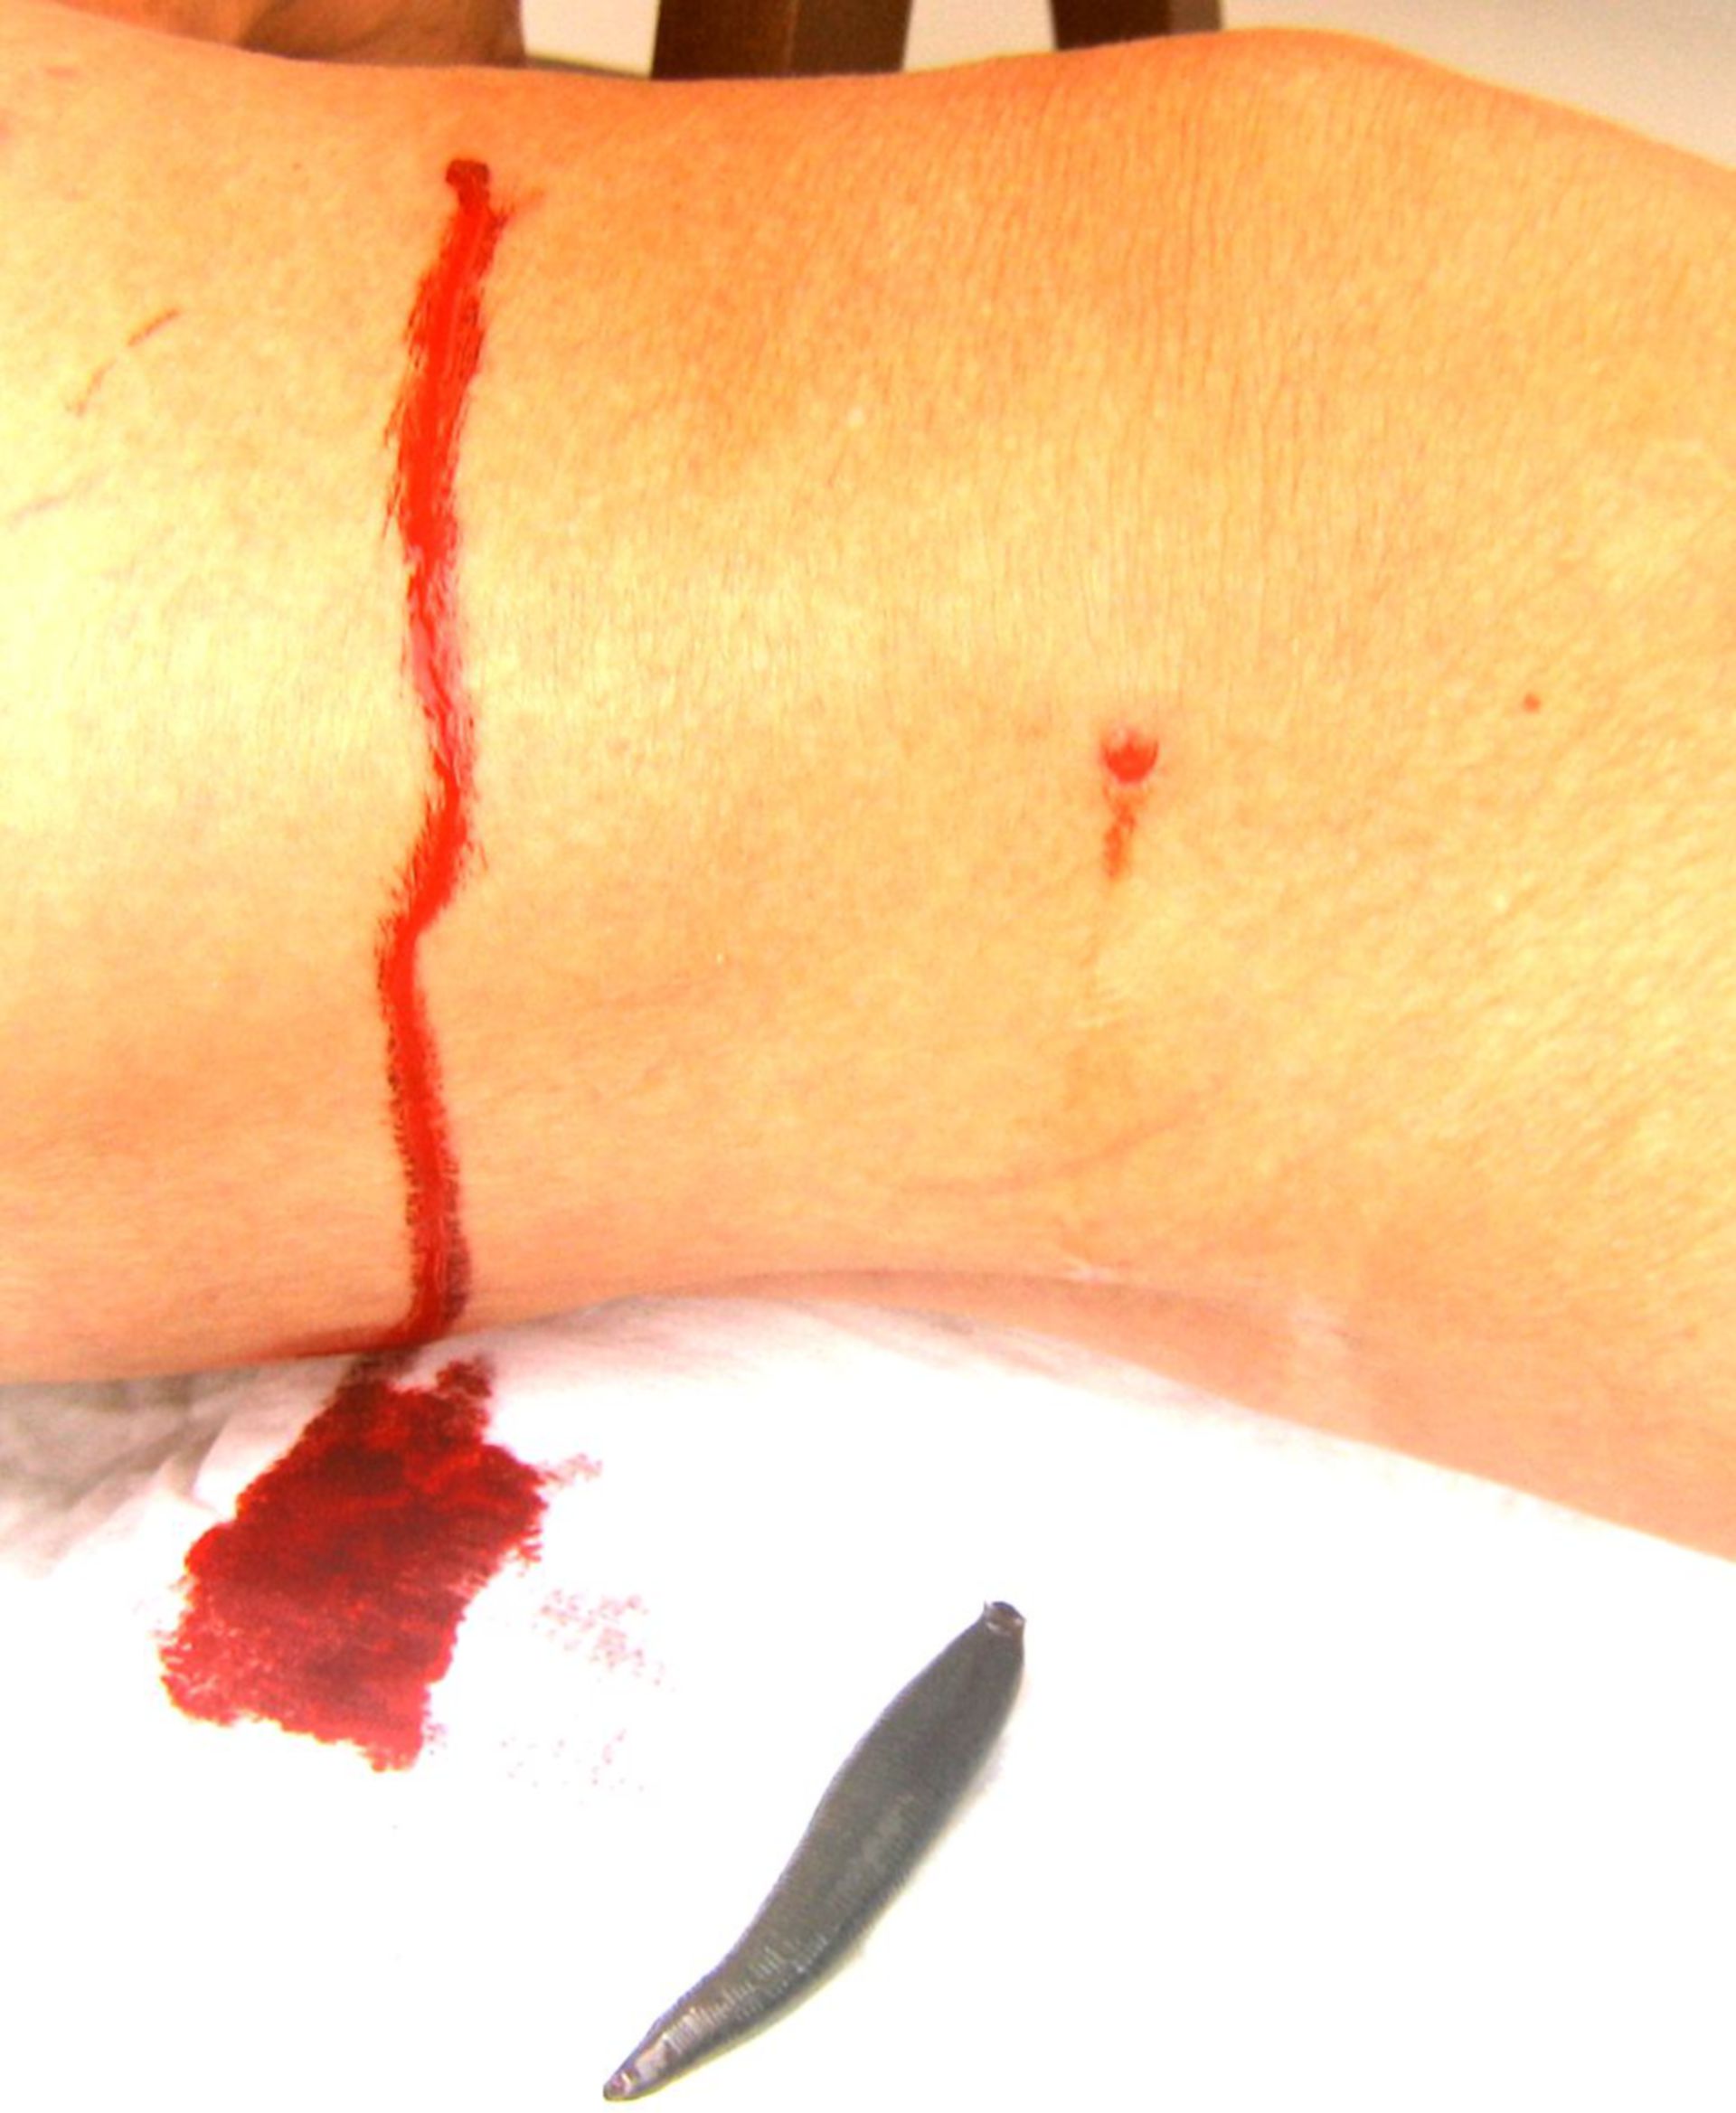 Blutegel an einem Knie